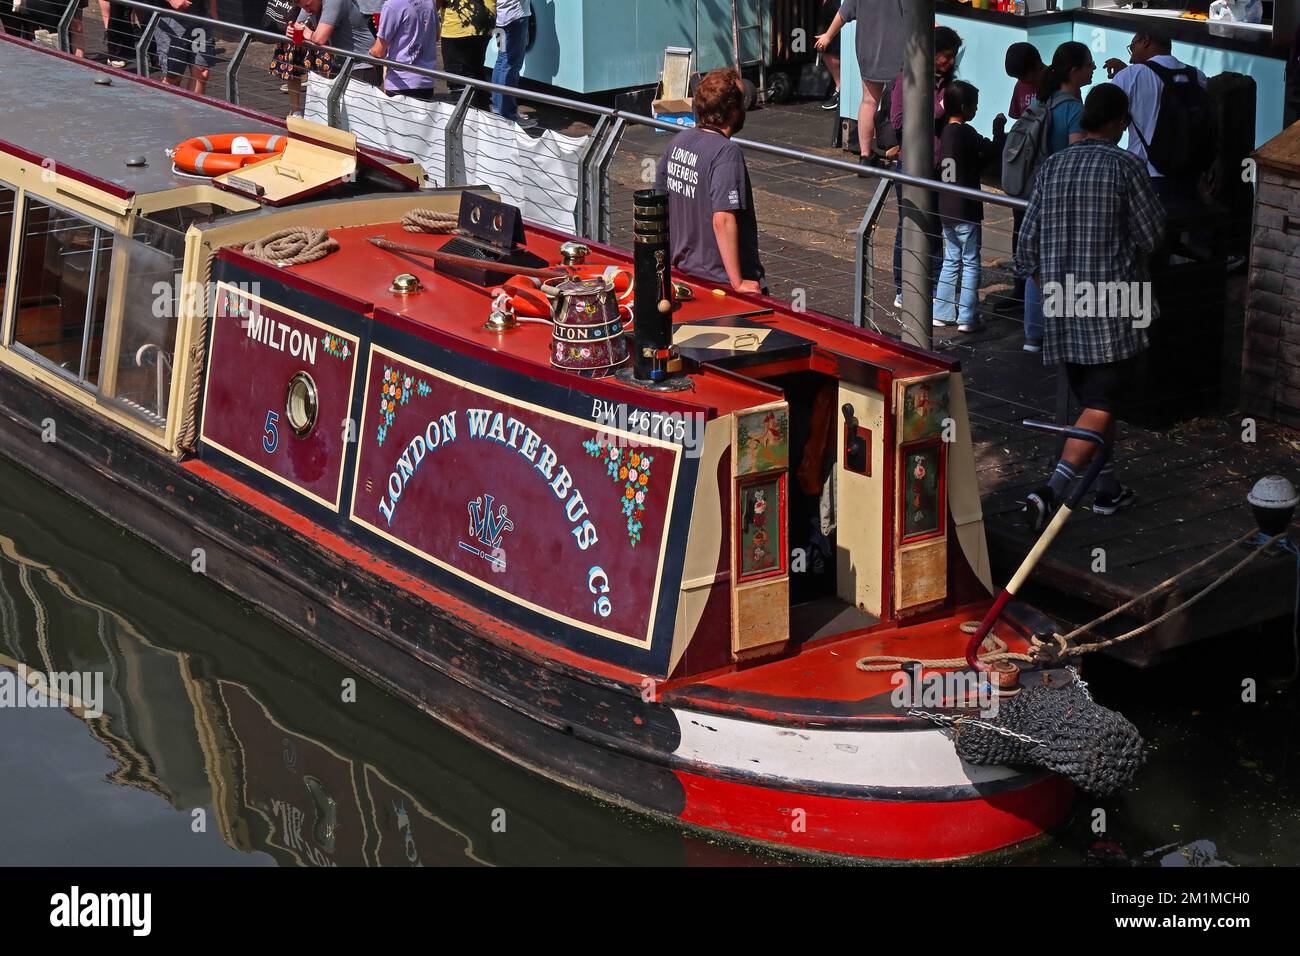 Barge du canal de Milton, bateau-bus de Londres, bateau touristique, amarré à Camden Lock, nord de Londres, Angleterre, Royaume-Uni, NW1 8AF Banque D'Images